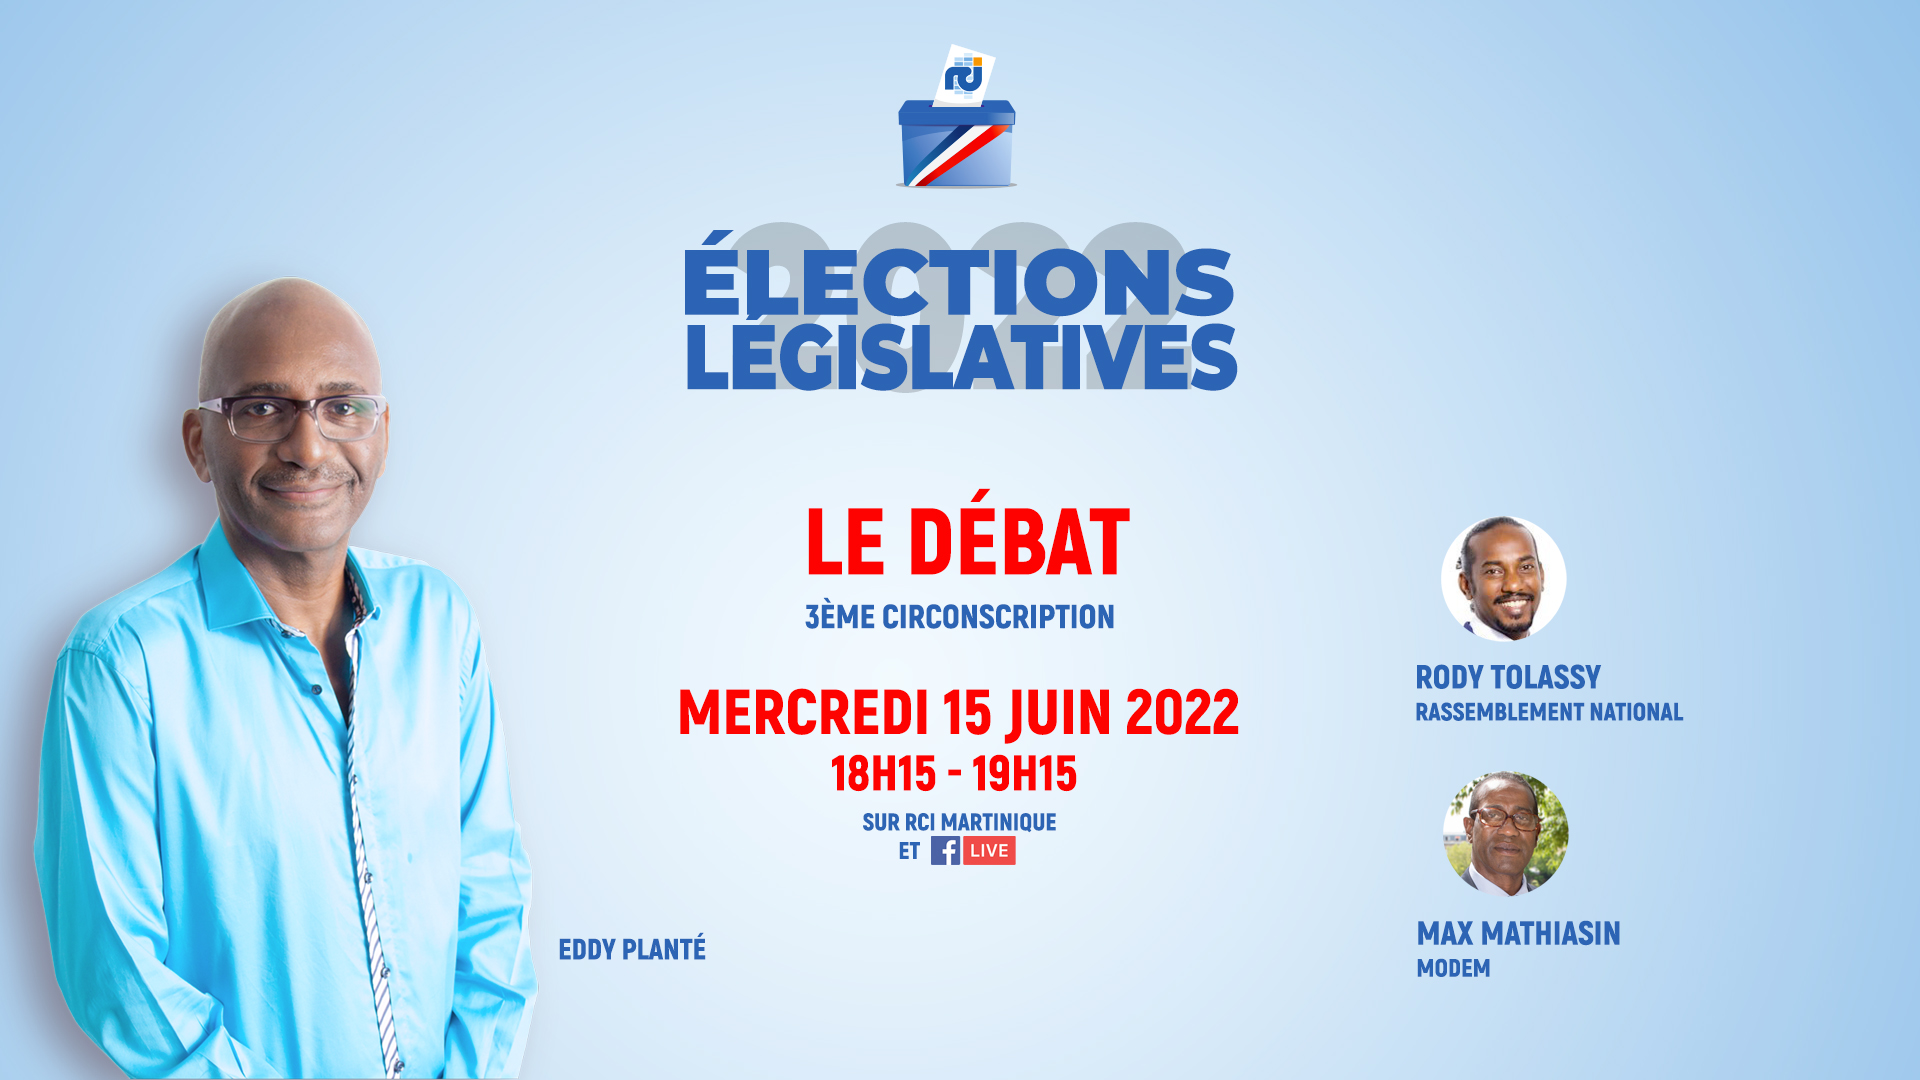     [LIVE] Législatives 2022 : suivez le débat entre Rody Tolassy et Max Mathiasin qualifiés pour le second tour dans la 3ème circonscription

